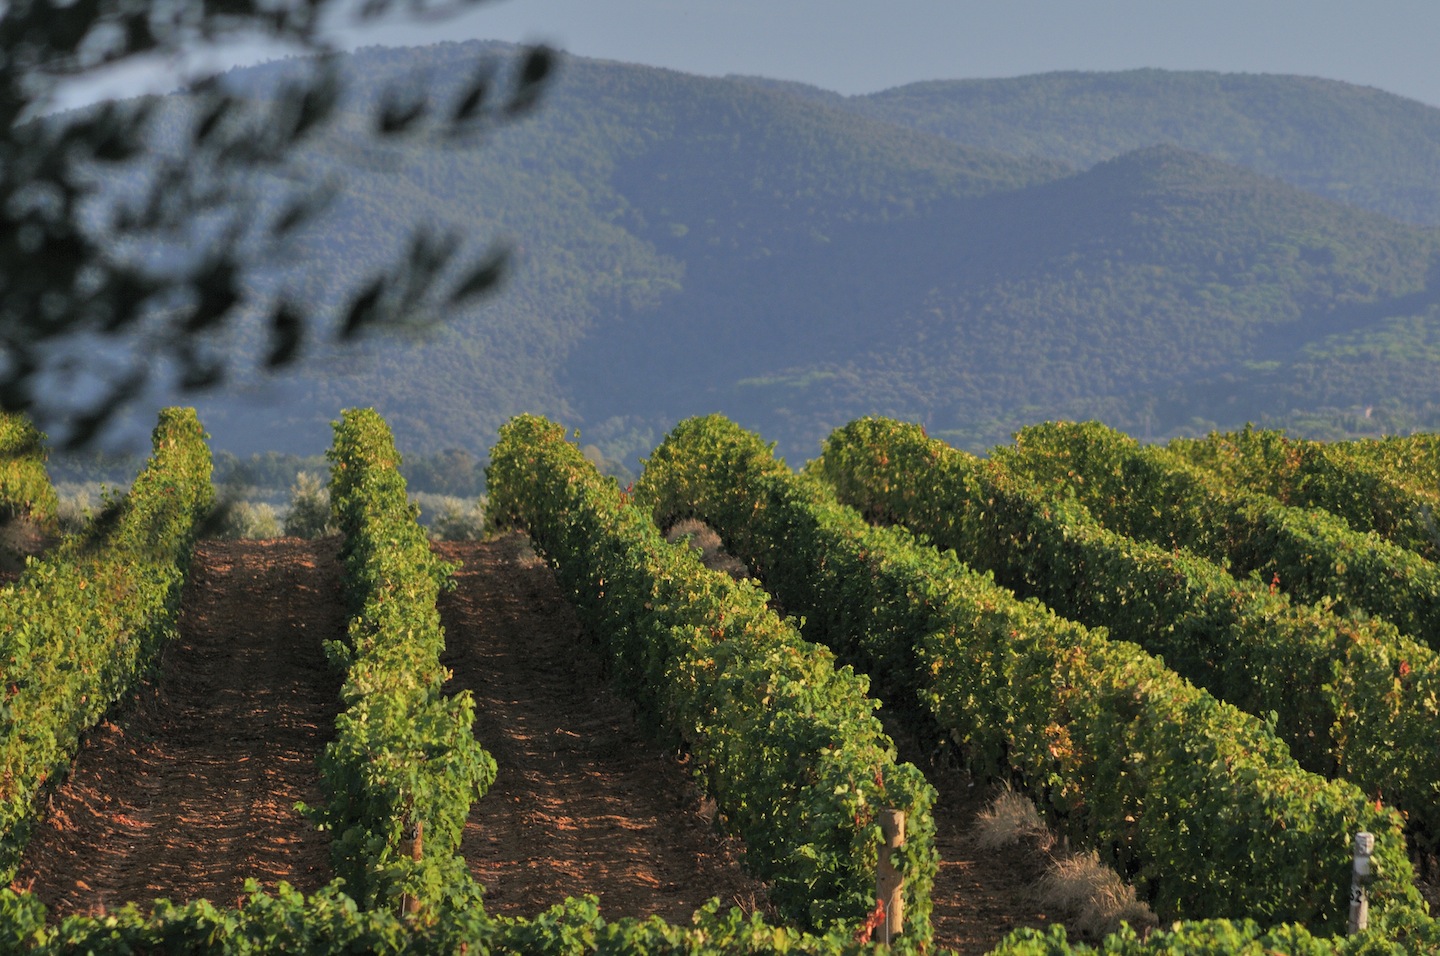 Il Sassicaia 2015 è stato eletto miglior vino del mondo da Wine Spectator, confermando il primato toscano nella scena dell'enologia mondiale.